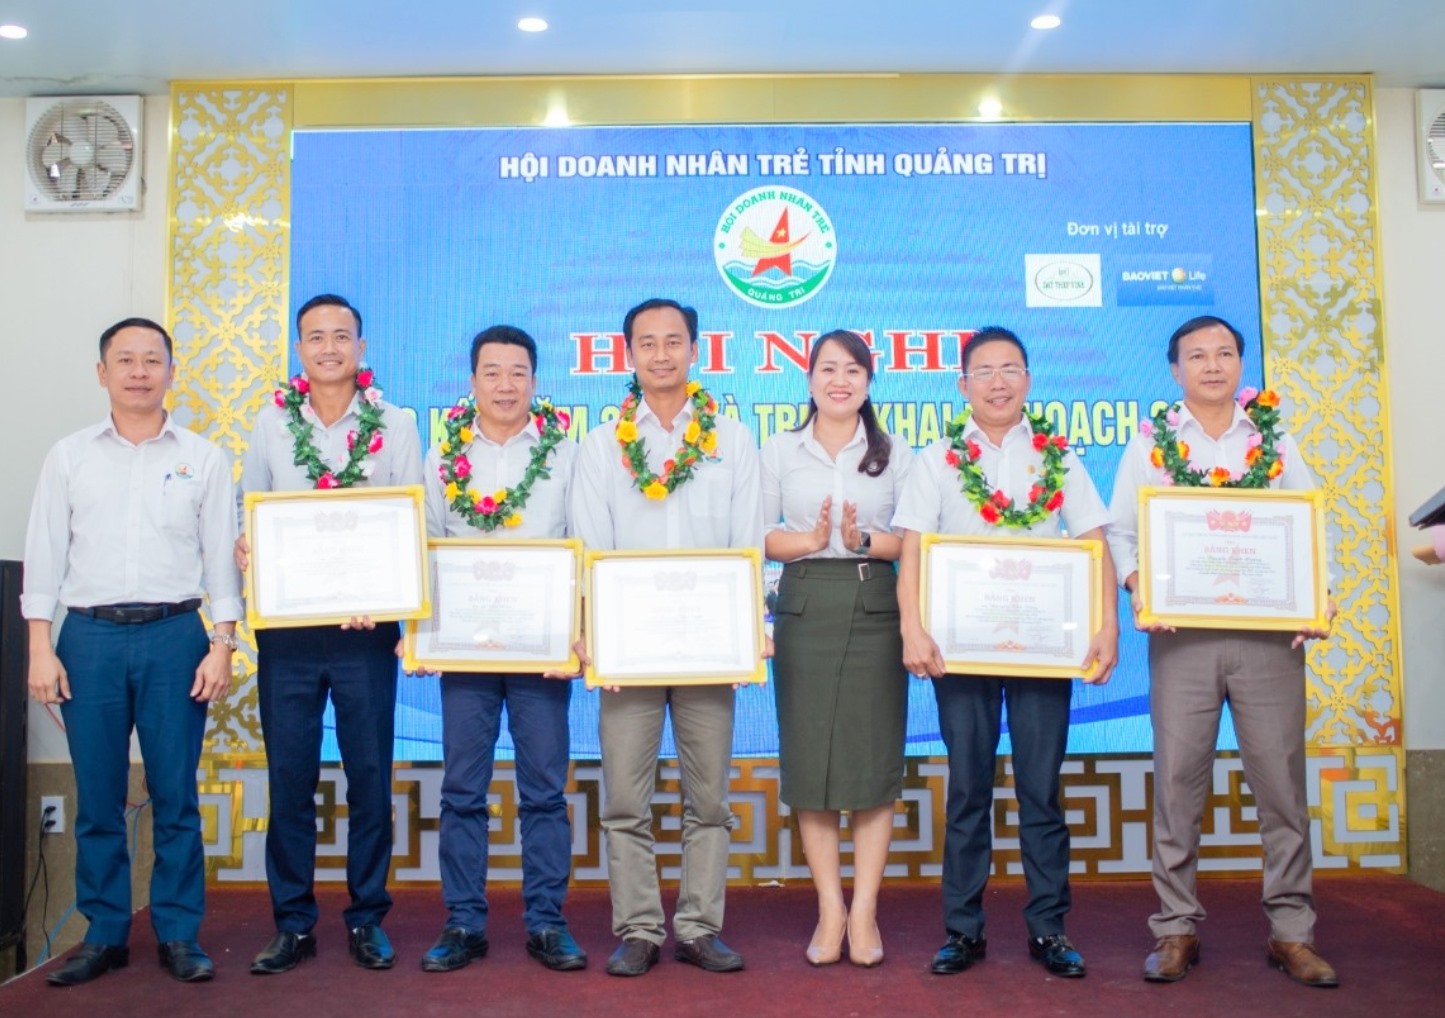 Trao bằng khen của Hội Doanh nhân trẻ Việt Nam cho các hội viên có thành tích xuất sắc trong công tác hội và phong trào Doanh nhân trẻ năm 2020 - Ảnh: K.S